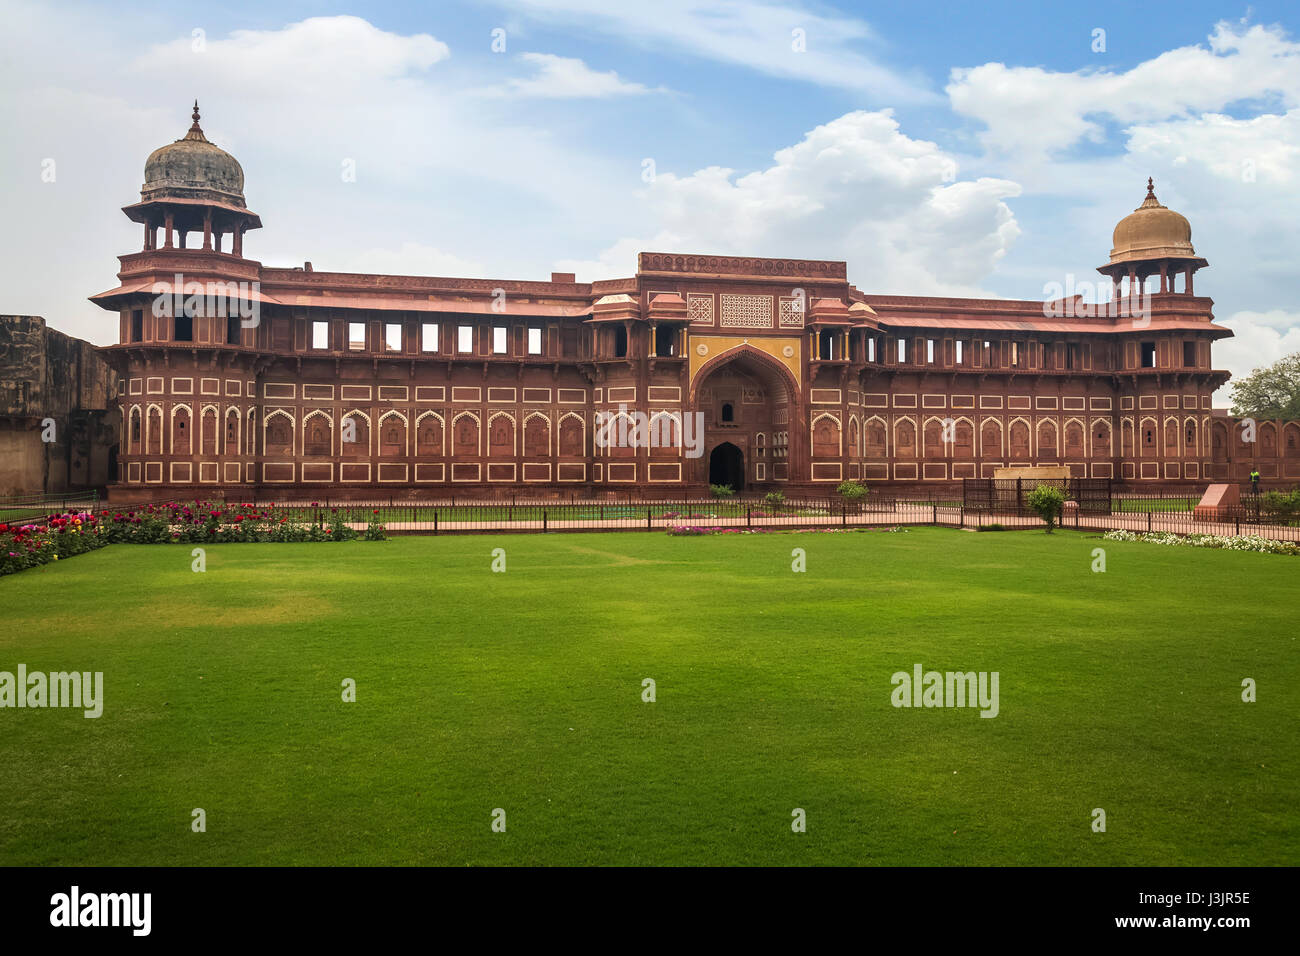 Royal Palace all'interno di agra fort agra fort costruito in mughal architettura indiano stile è stato designato come un sito patrimonio mondiale dell'UNESCO. Foto Stock